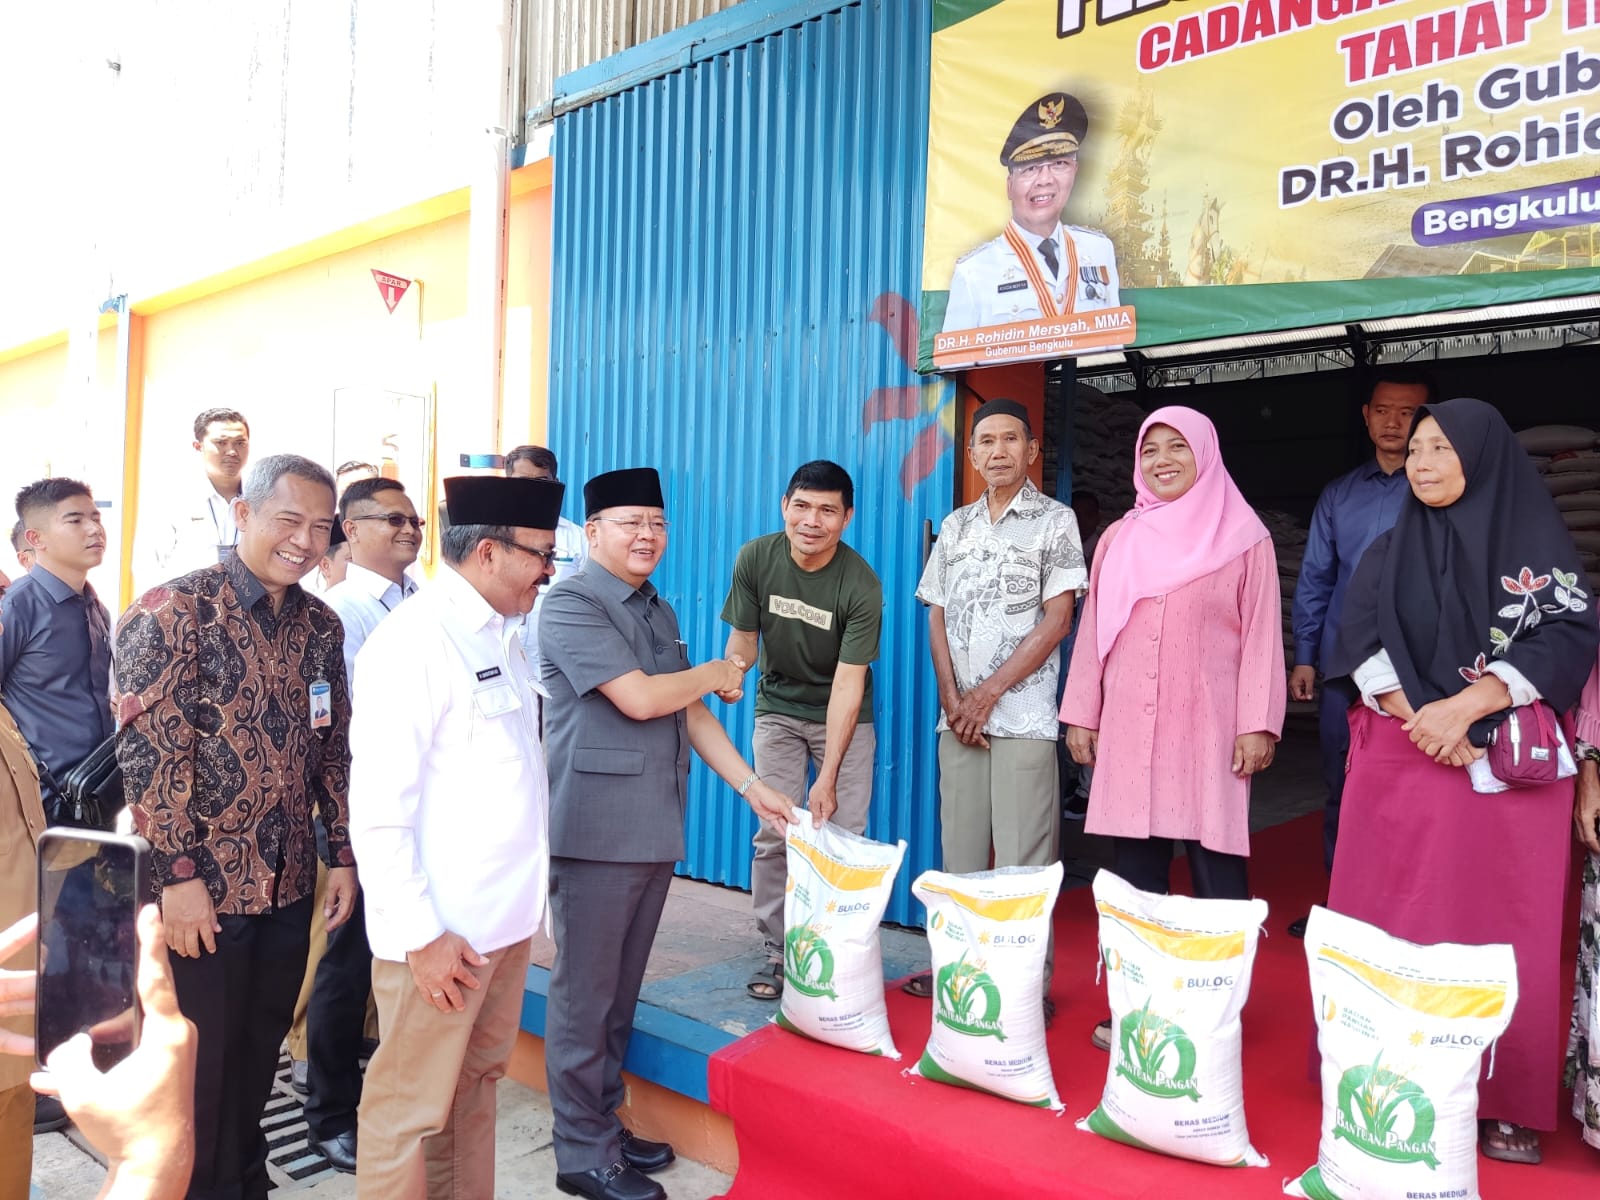 Gurbernur Bengkulu Rohidin Salurkan  Bantuan Pangan Beras Tahap II untuk Provinsi Bengkulu